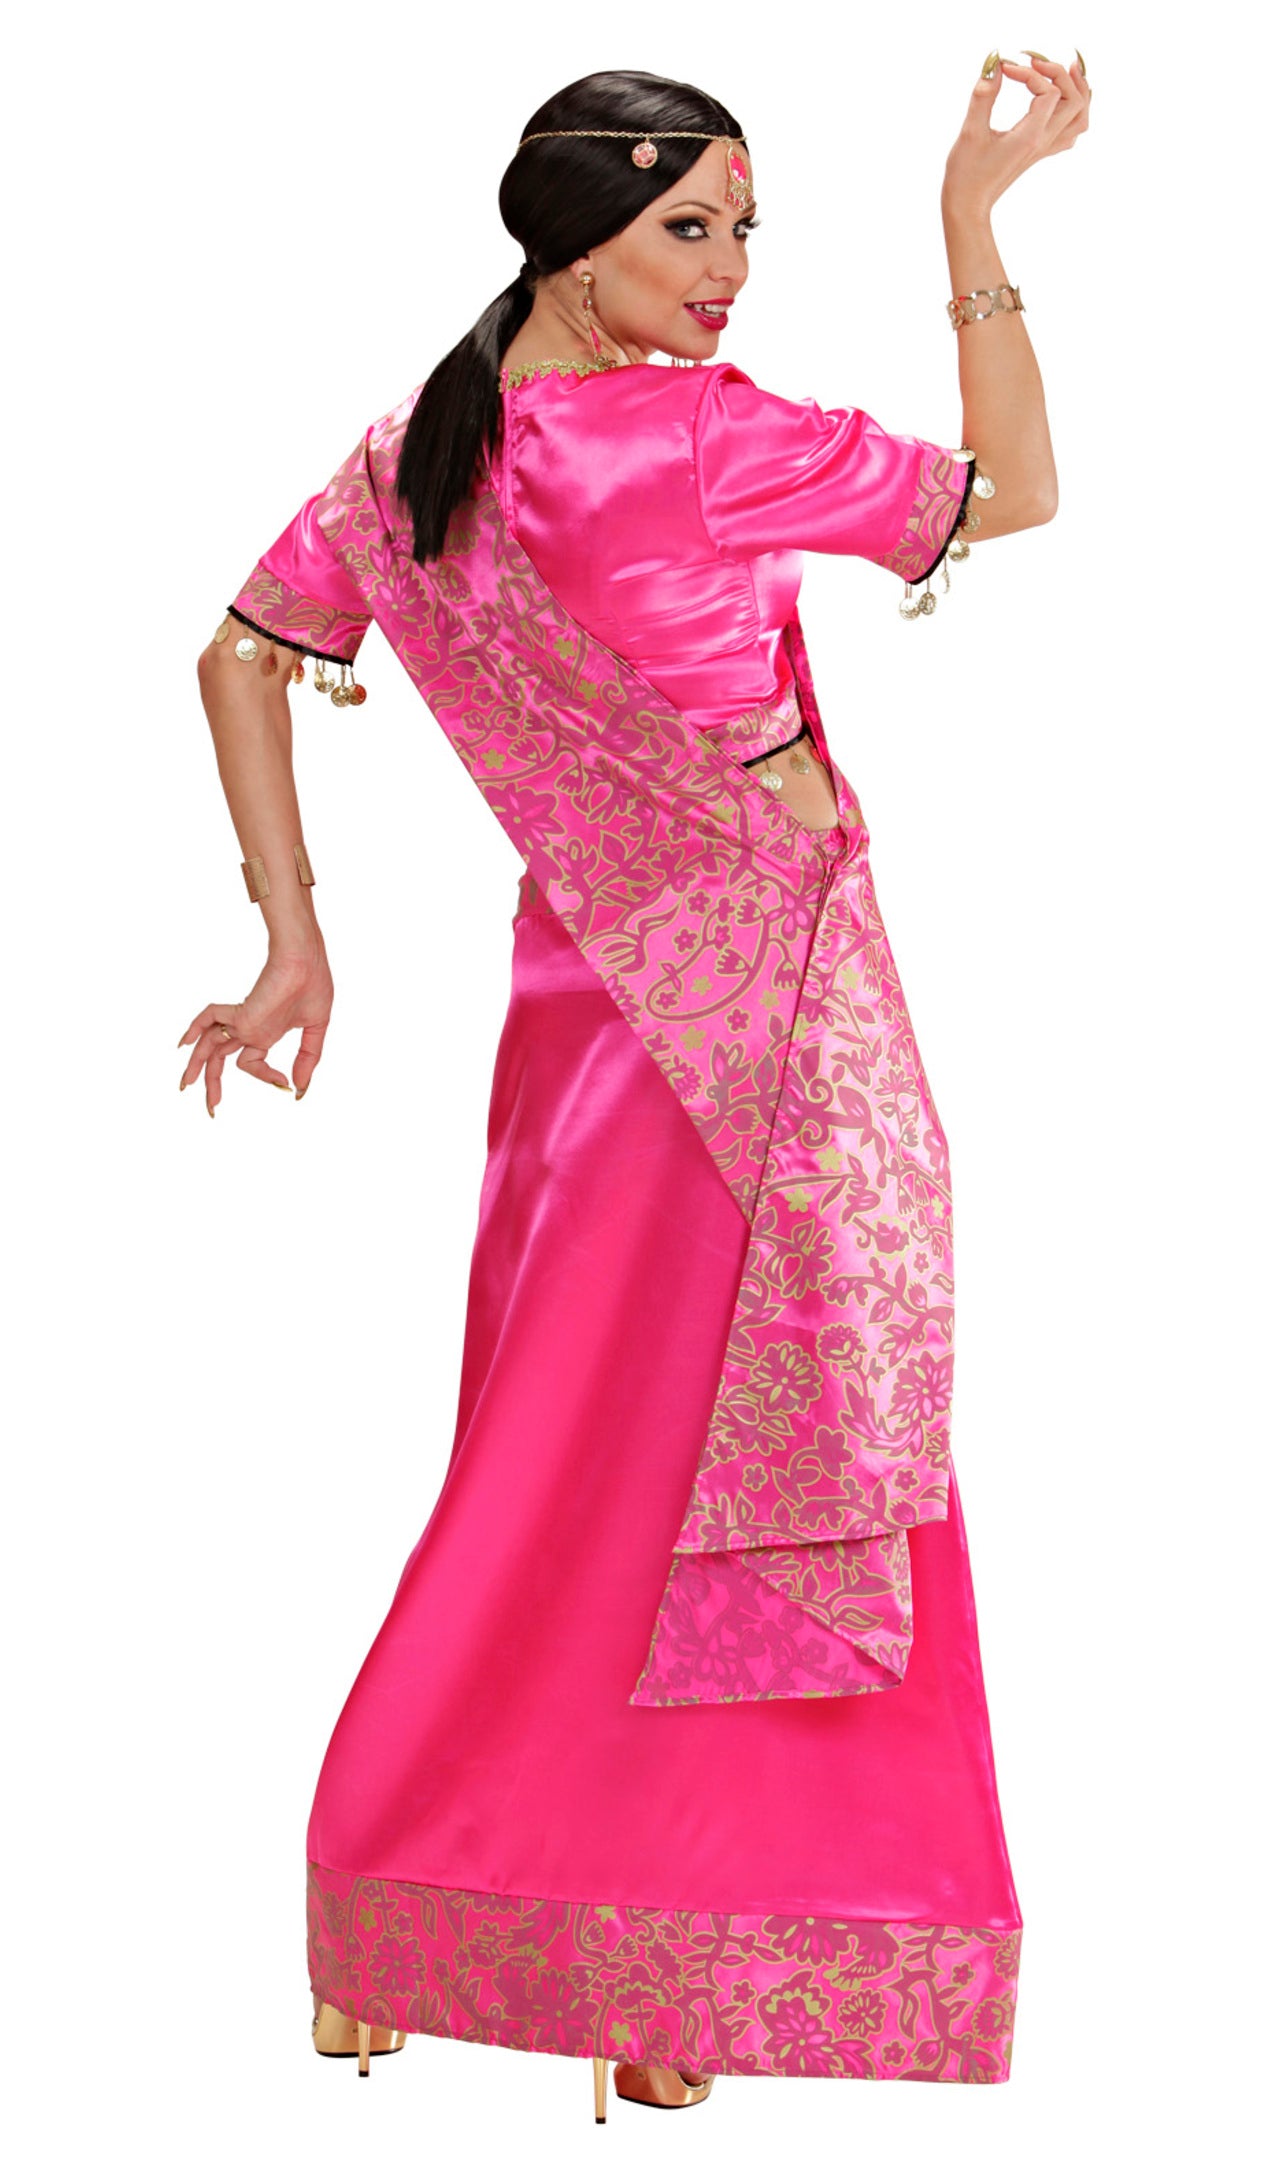 Disfraz de princesa Bollywood para niña